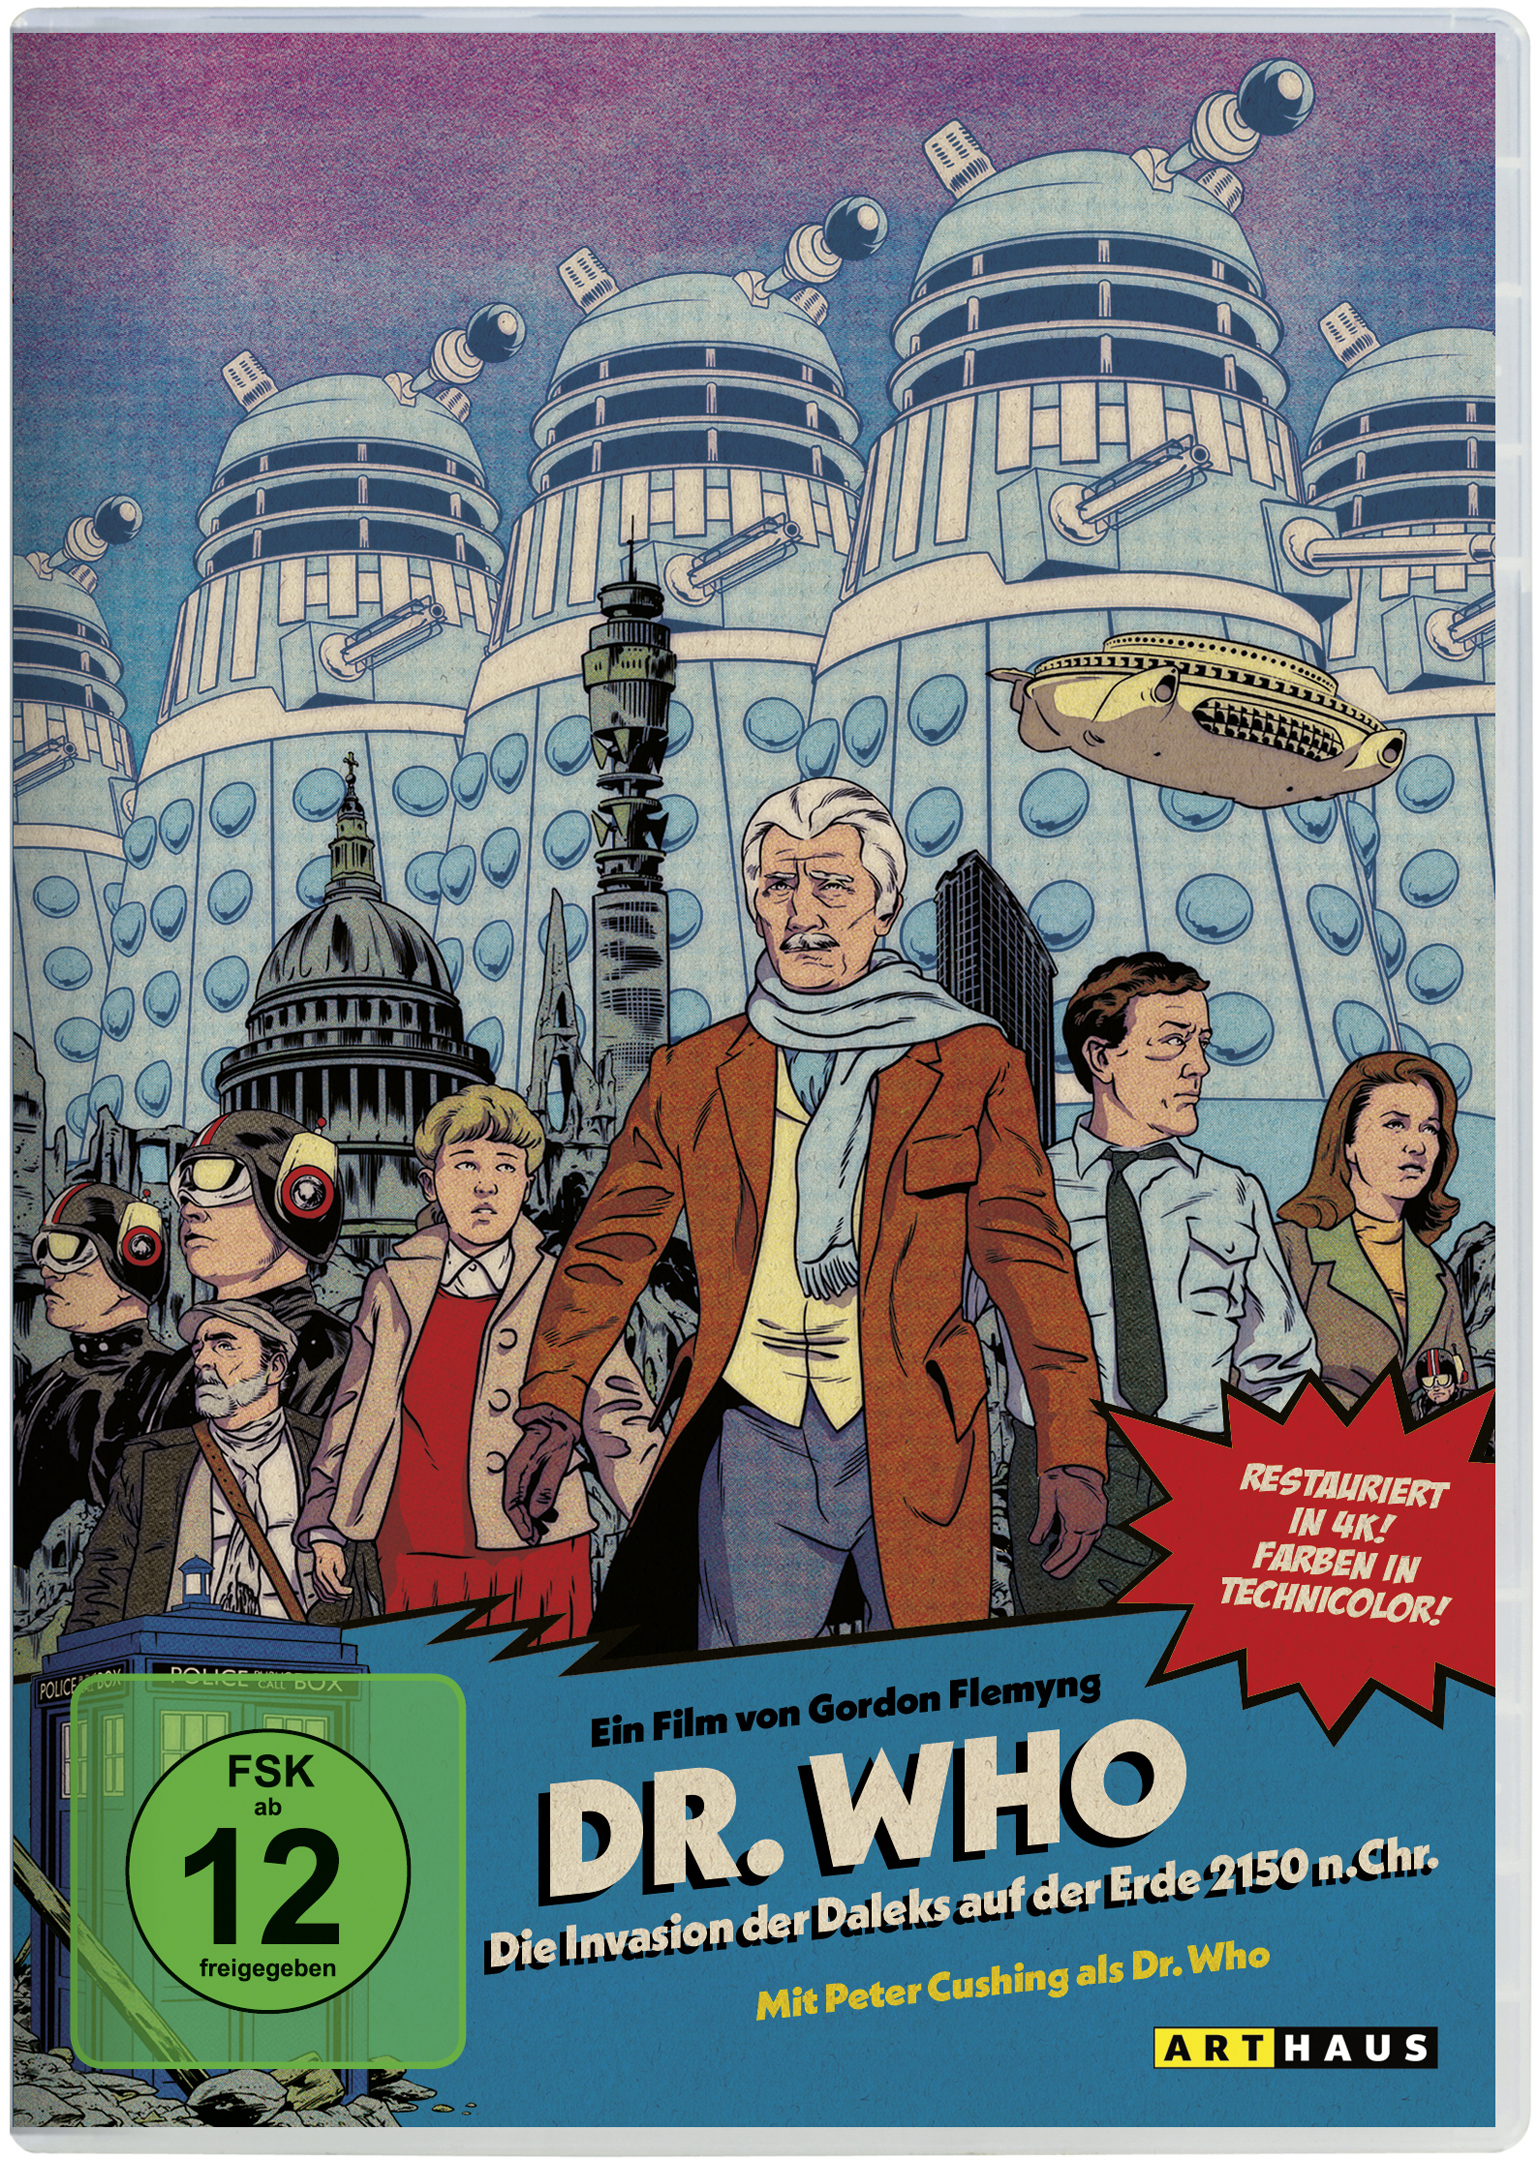 Dr. Who: Die Invasion der Chr. der Erde n. DVD Daleks auf 2150